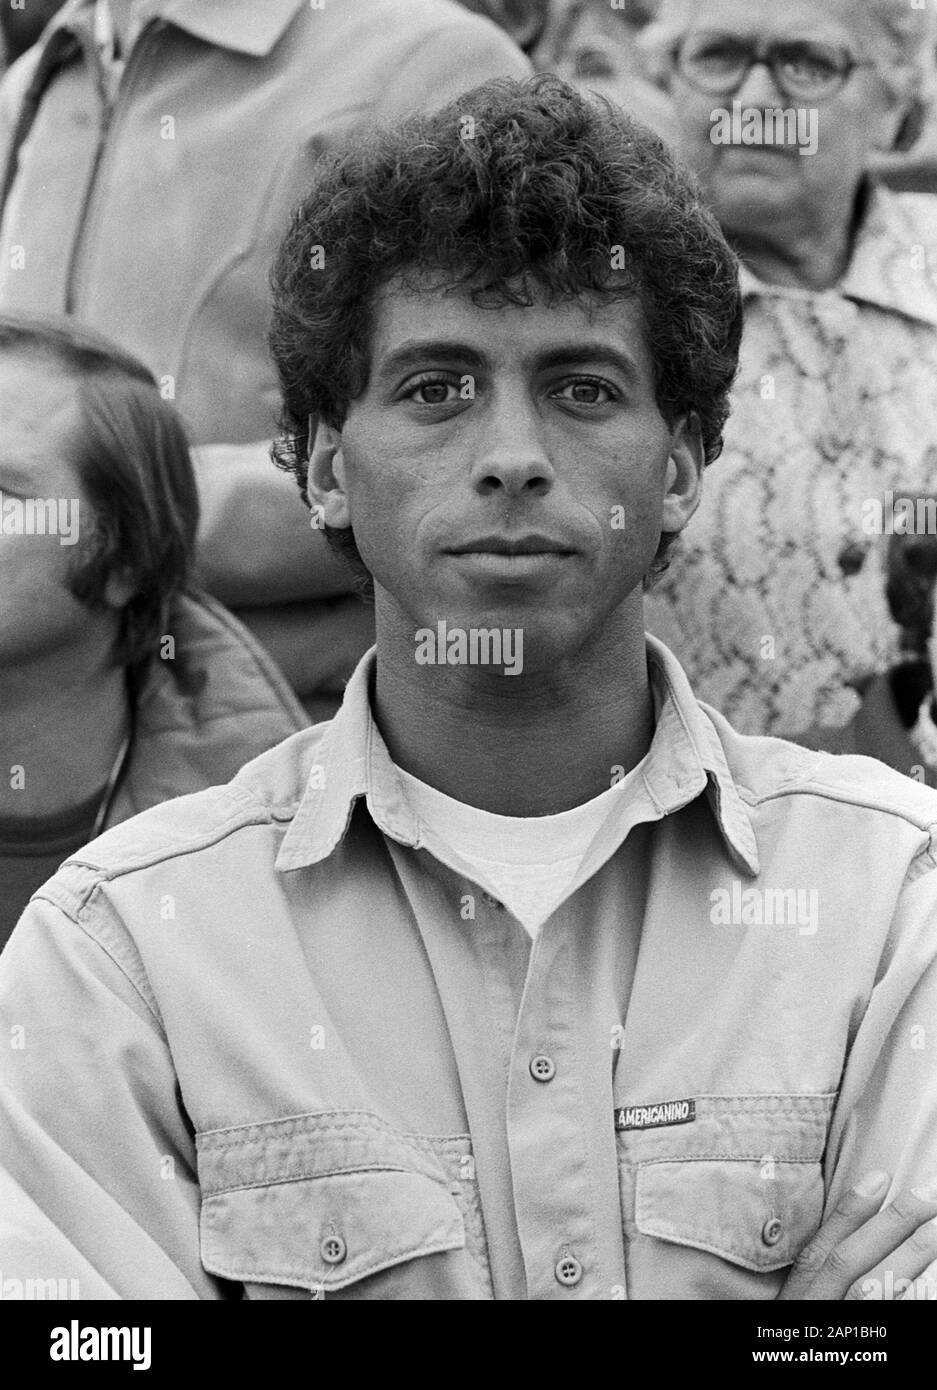 Jimmy Hartwig, deutscher Fußballspieler in Hamburg, Deutschland um 1981. German football player Jimmy Hartwig at Hamburg, Germany around 1981. Stock Photo